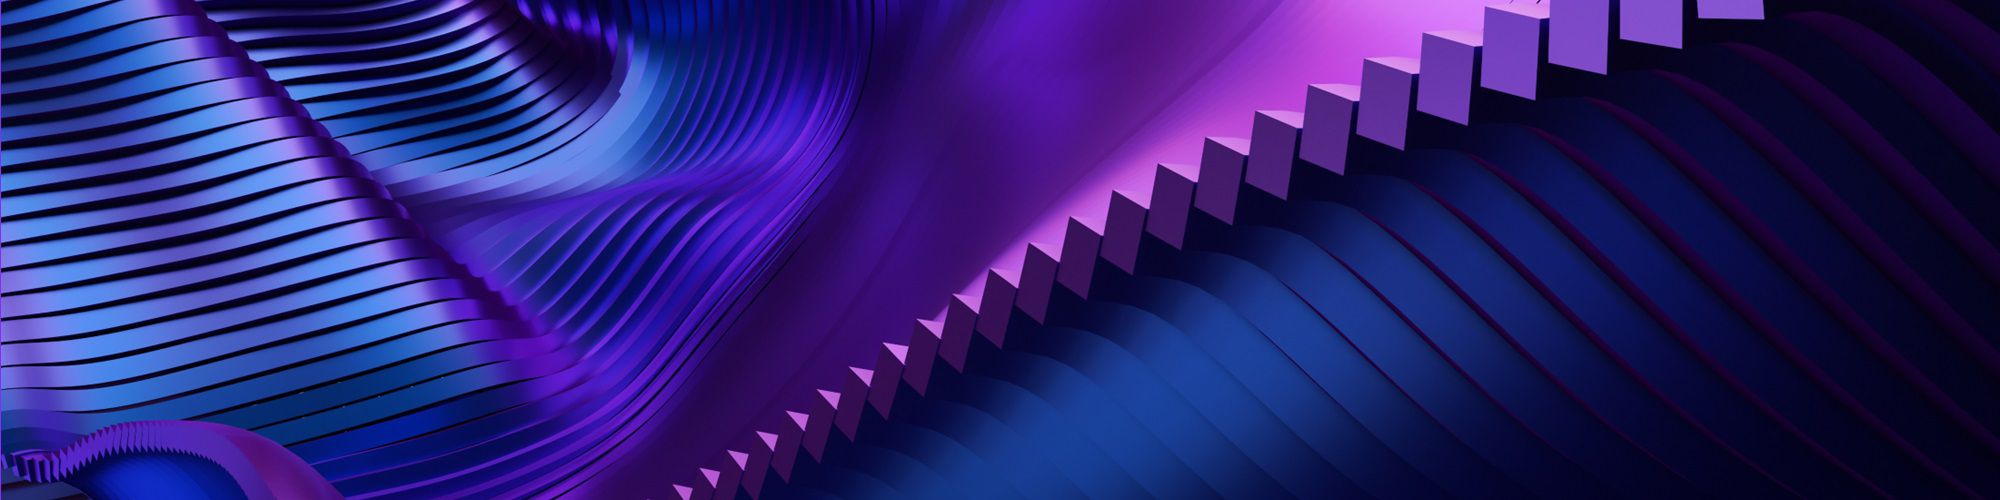 blue-purple-slides